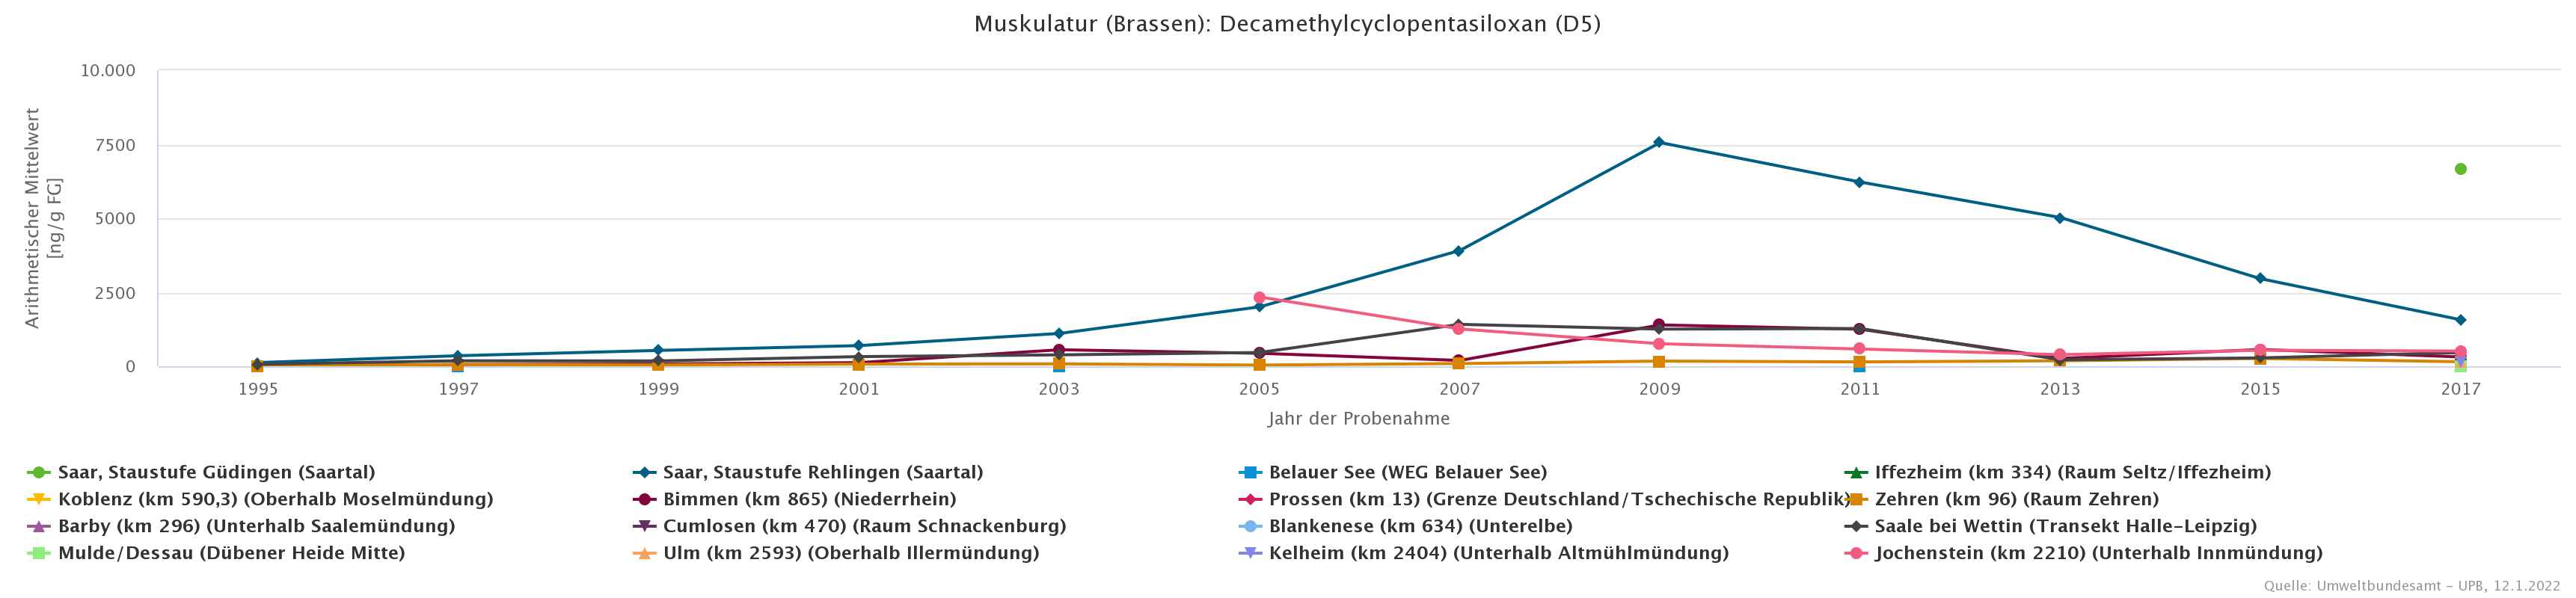 Besonders auffällig hohe Konzentration von Decamethylcyclopentasiloxan an der Saar-Probenahmefläche Staustufe Rehlingen in 2009.